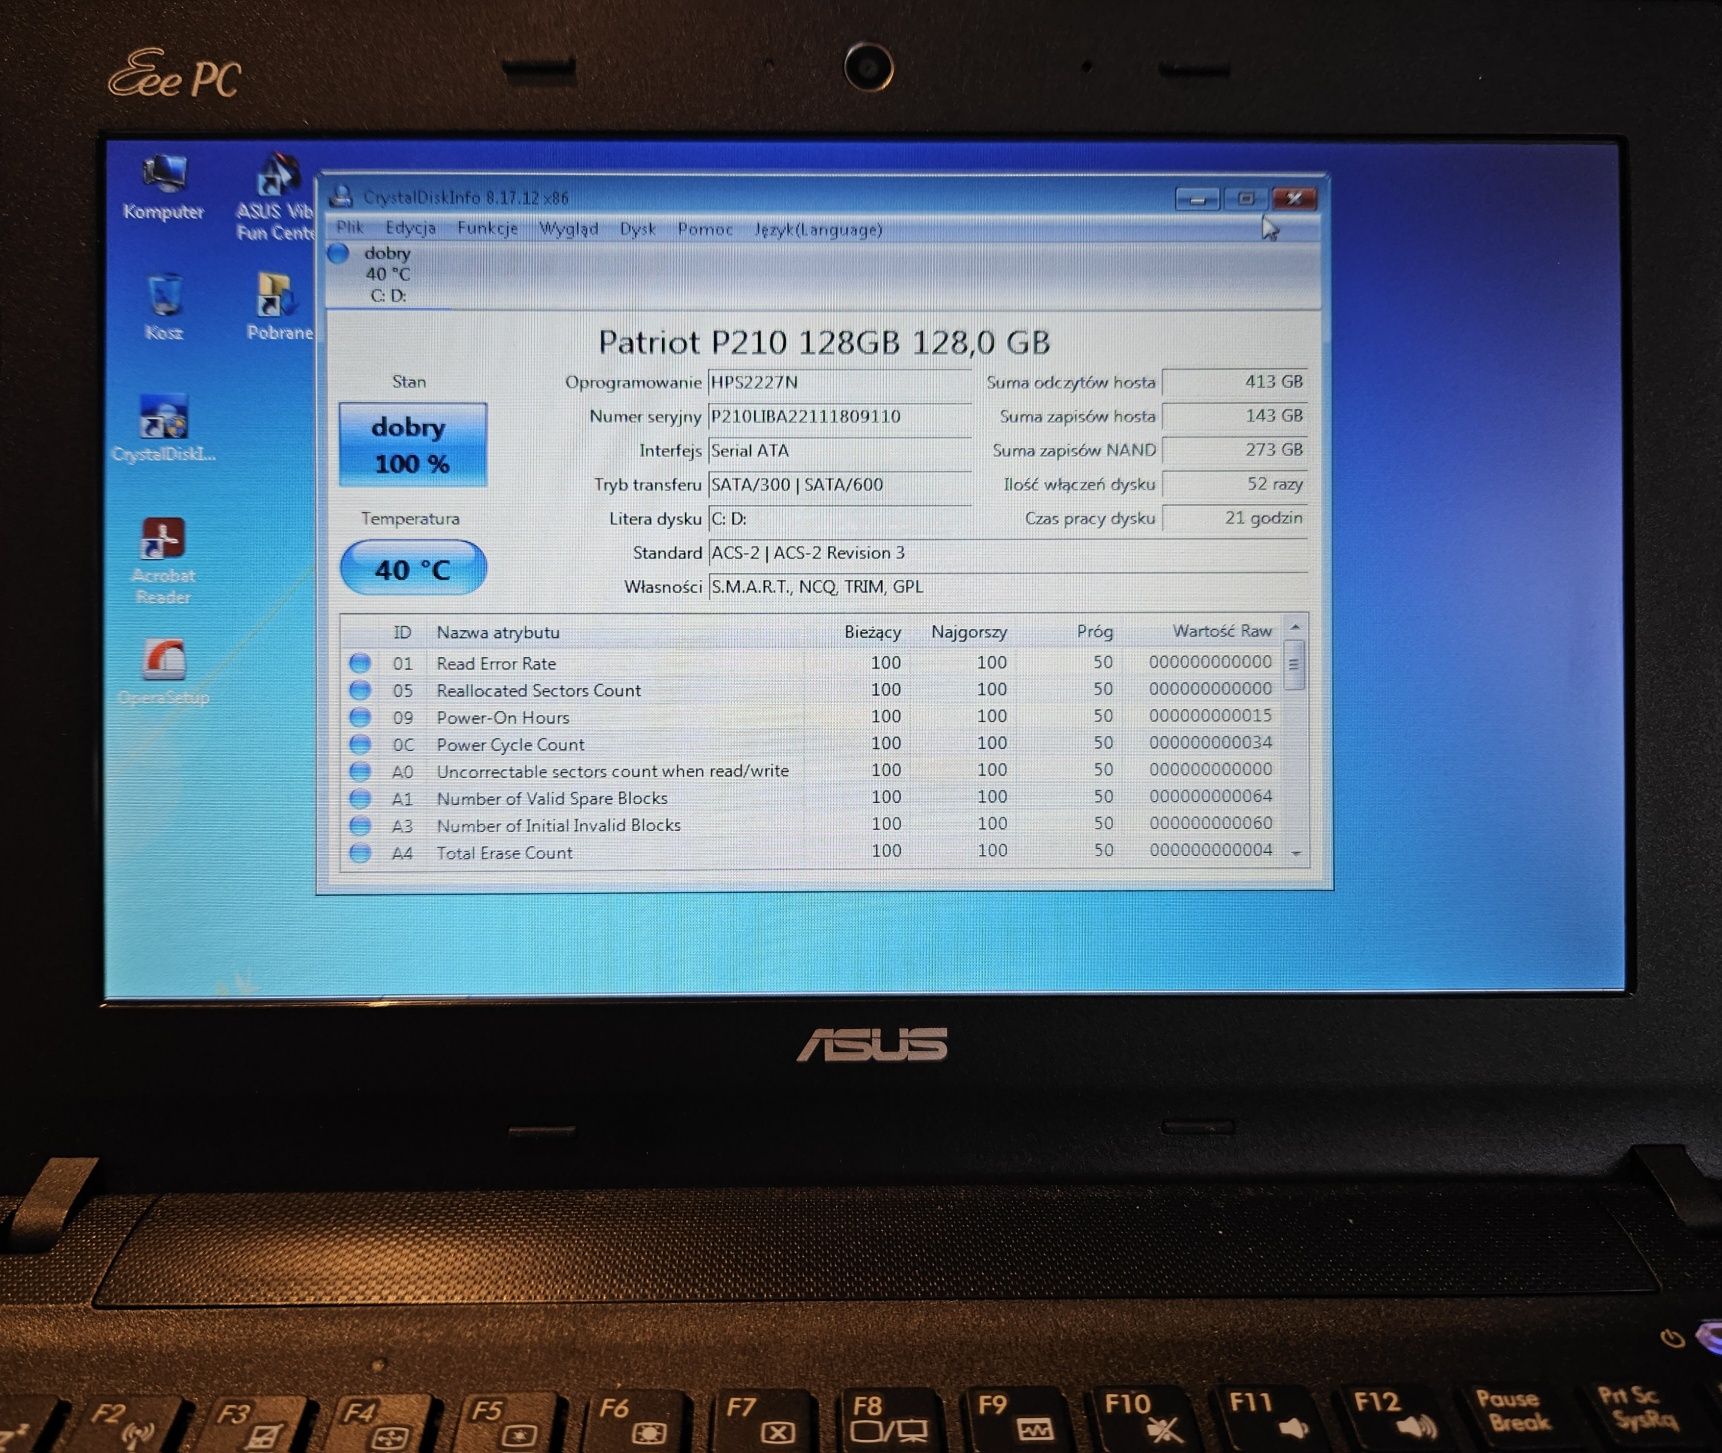 ASUS Eee PC X101CH 10"stan idealny 128GB SSD/Win7 Starter Łódź+gratisy